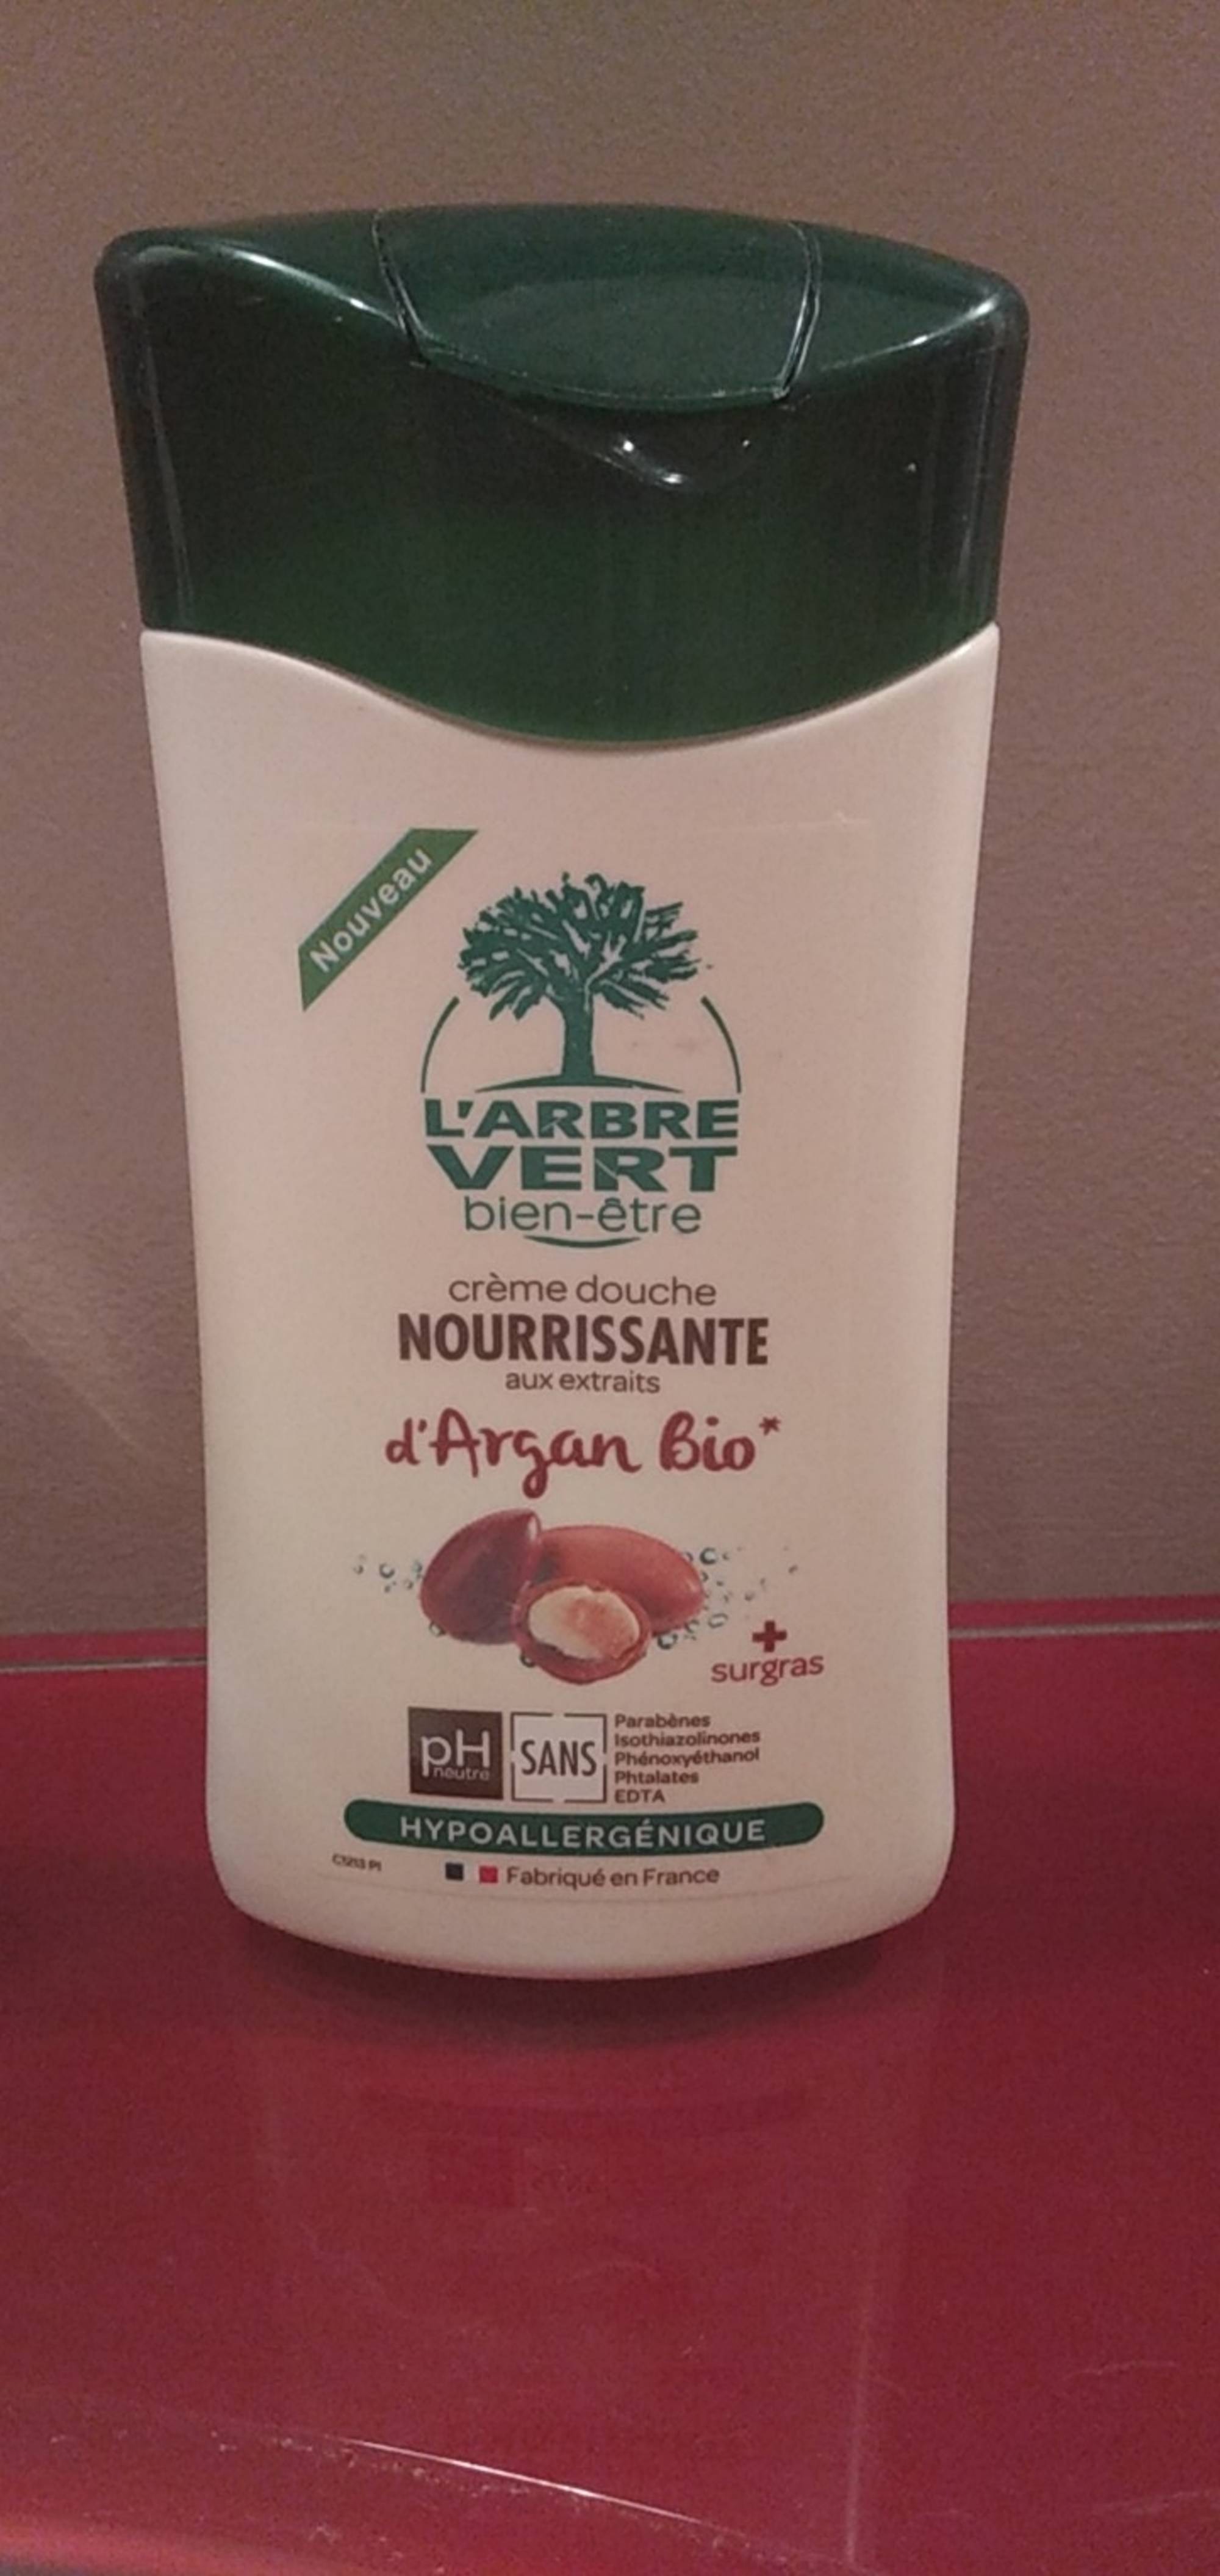 L'ARBRE VERT - Argan bio - Crème douche nourrissante 